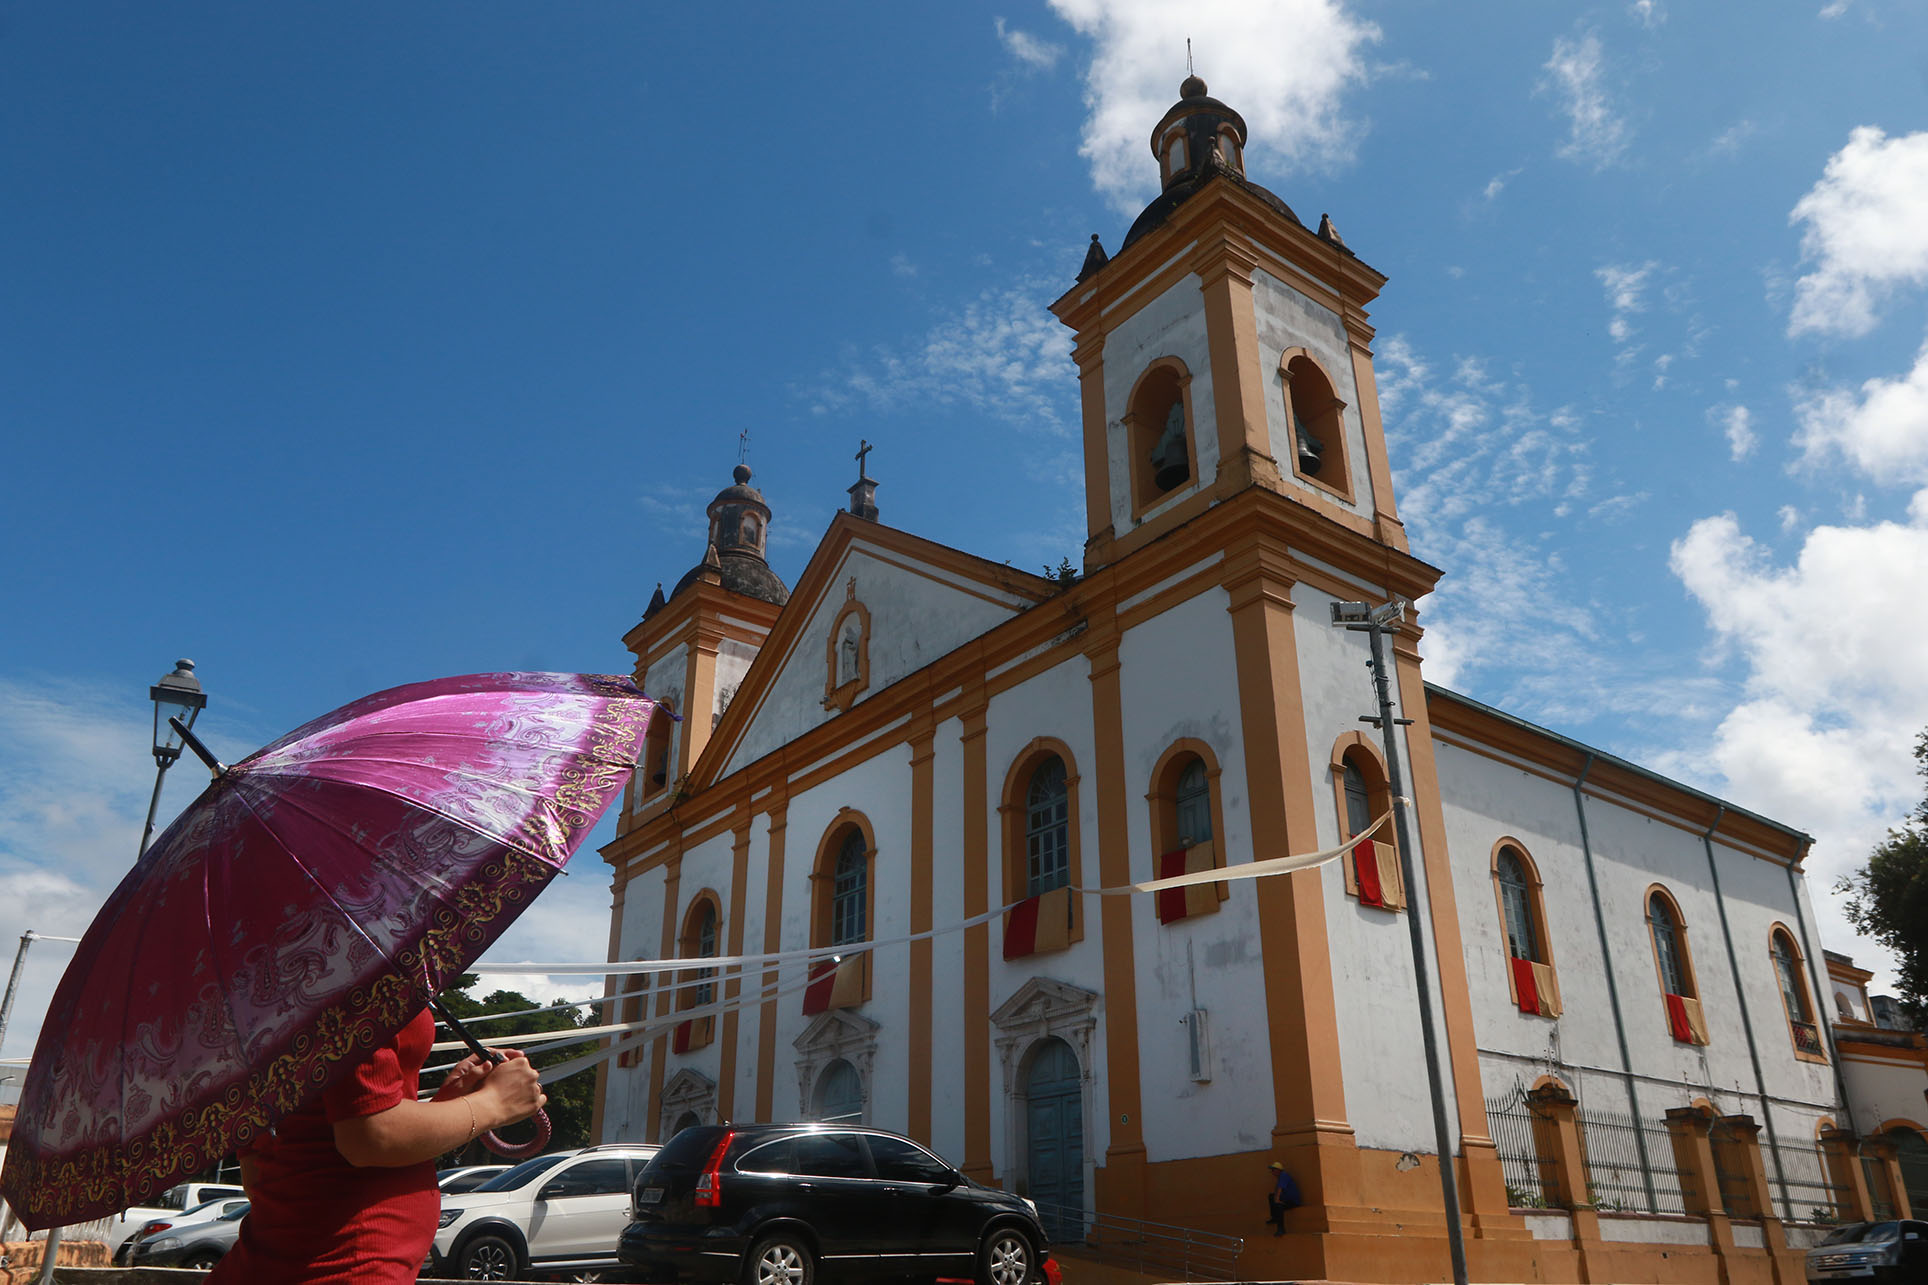 Catedral Metropolitana de Manaus – Nossa Senhora da Conceição